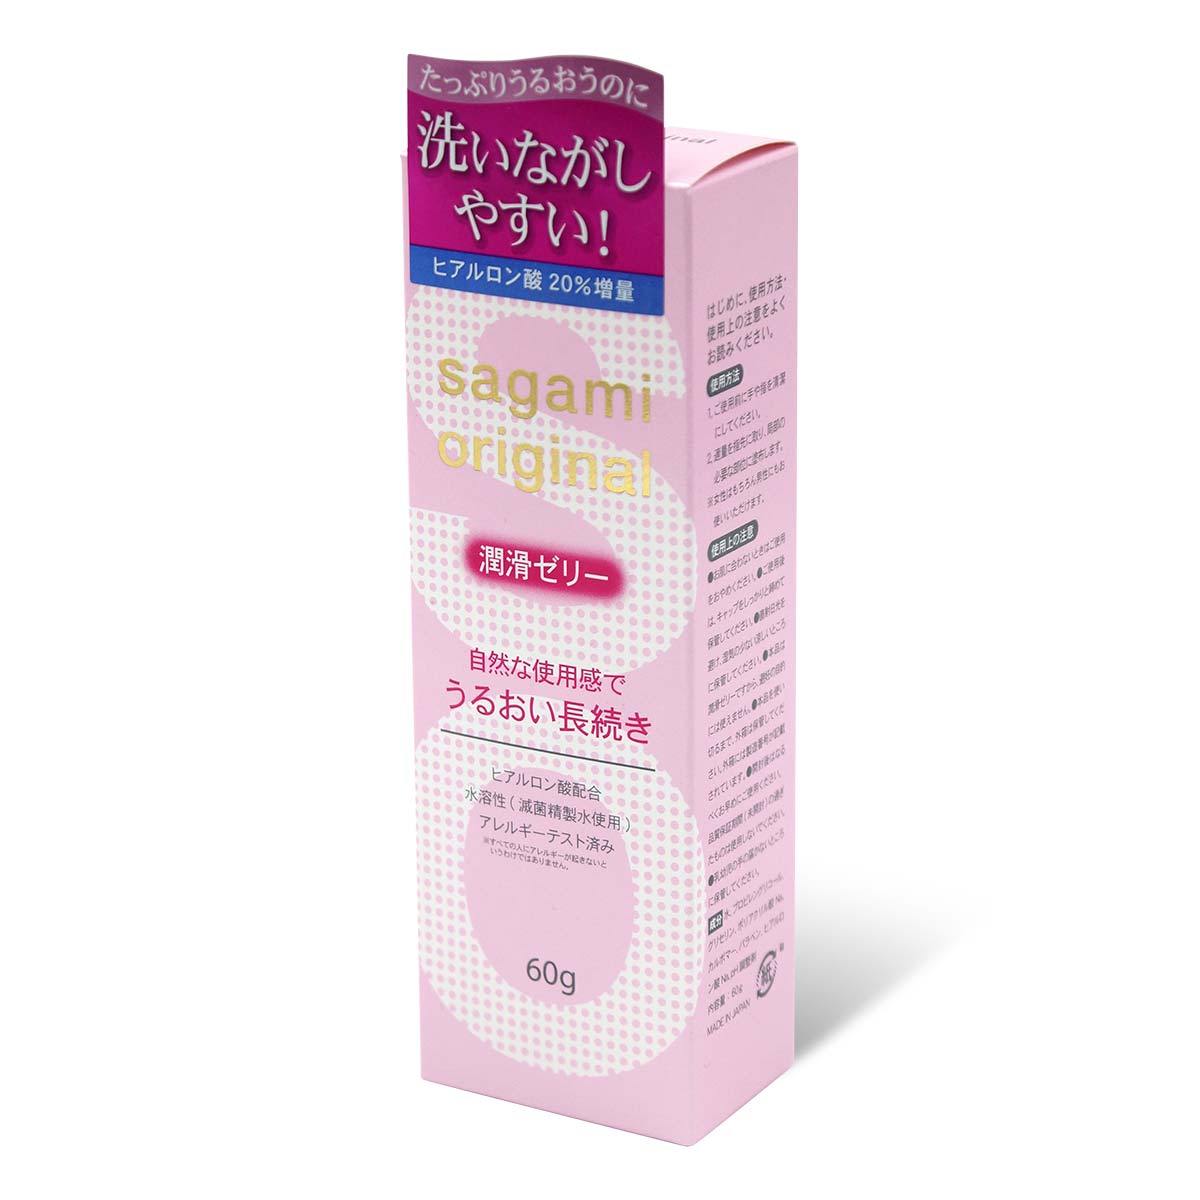 Sagami Original Lubricating Gel 60g Water-based Lubricant-thumb